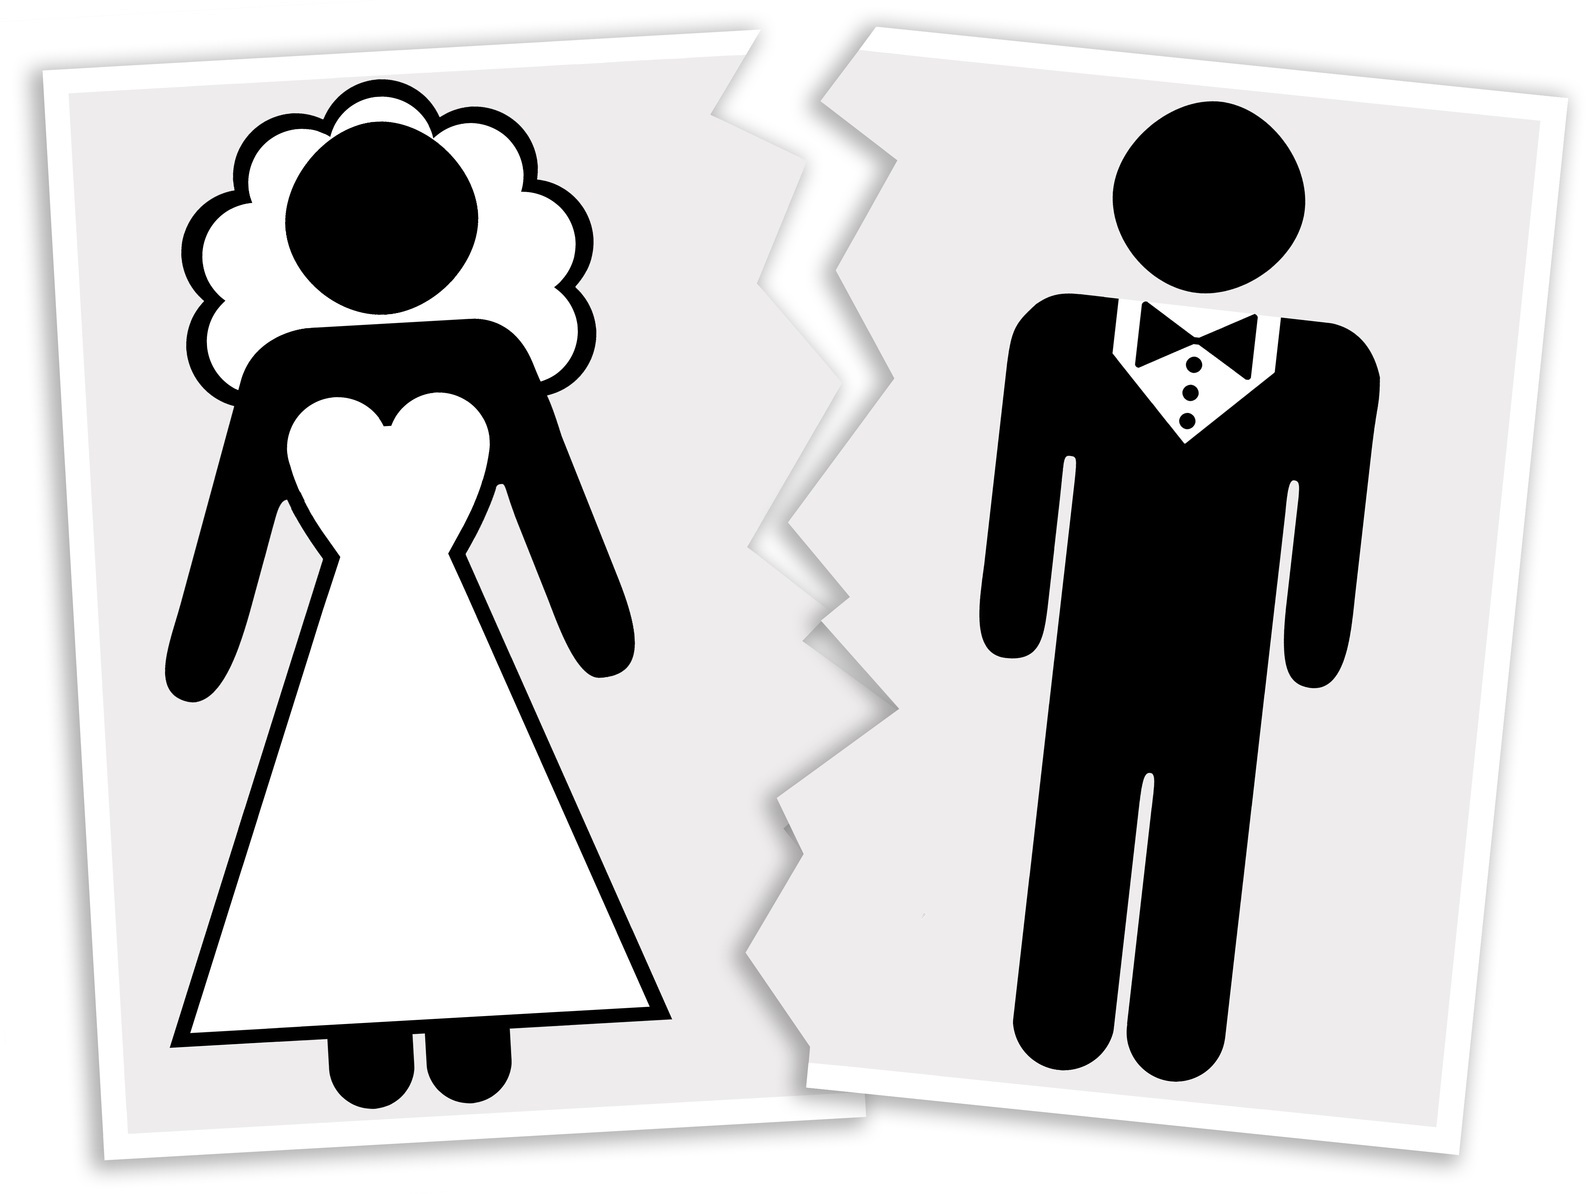 3دلیل اصلی افزایش طلاق در کلانشهرها